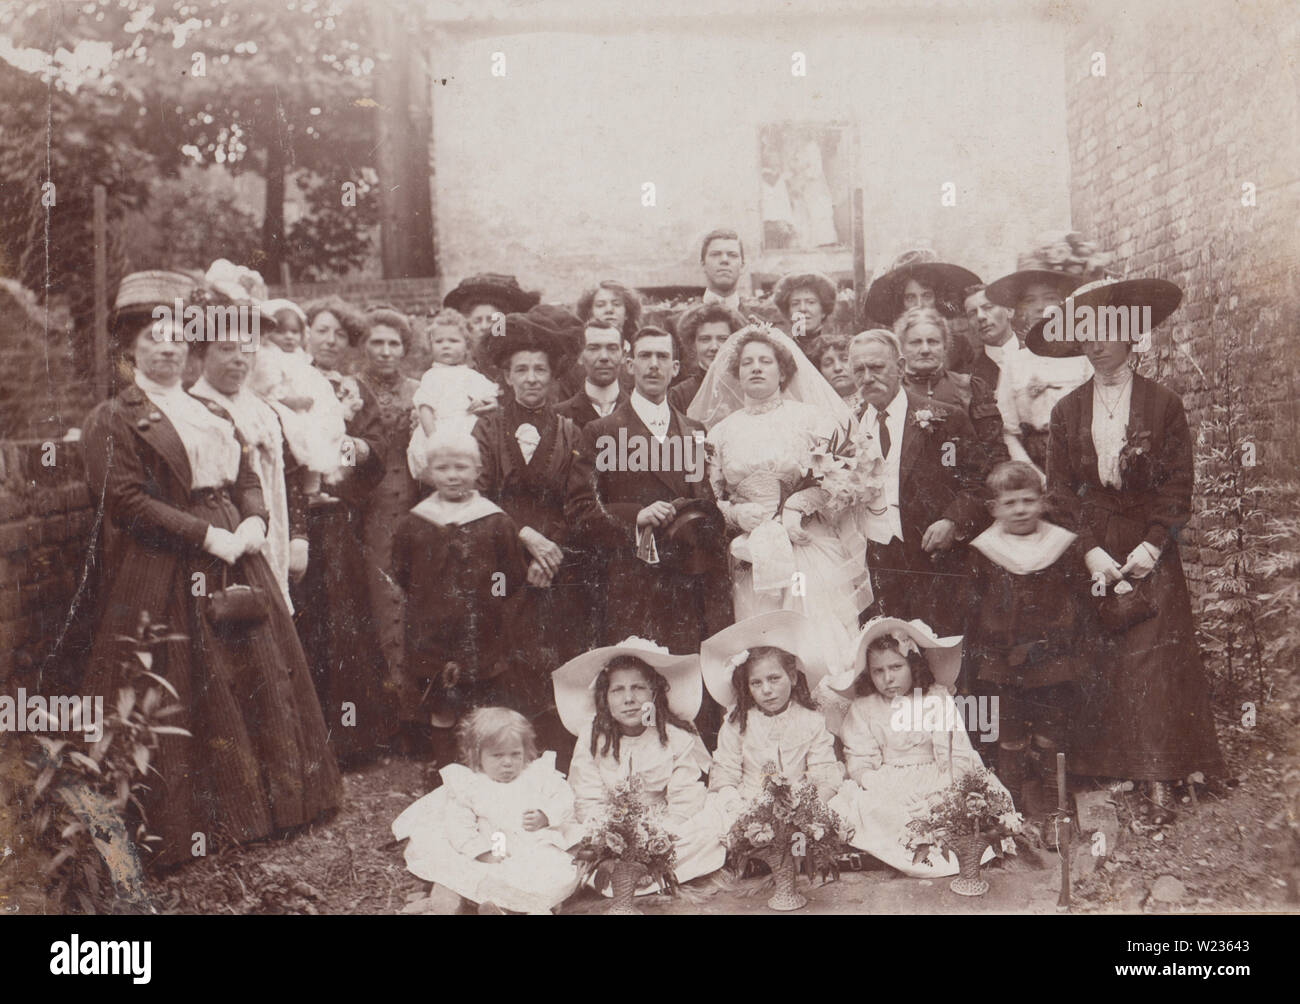 Edwardian Photographie d'une grande partie de mariage à Camberwell, Londres en 1902. Identifiés comme épouse Gertrude Julia Scott. Groom identifiés comme Claud Coombe. Banque D'Images